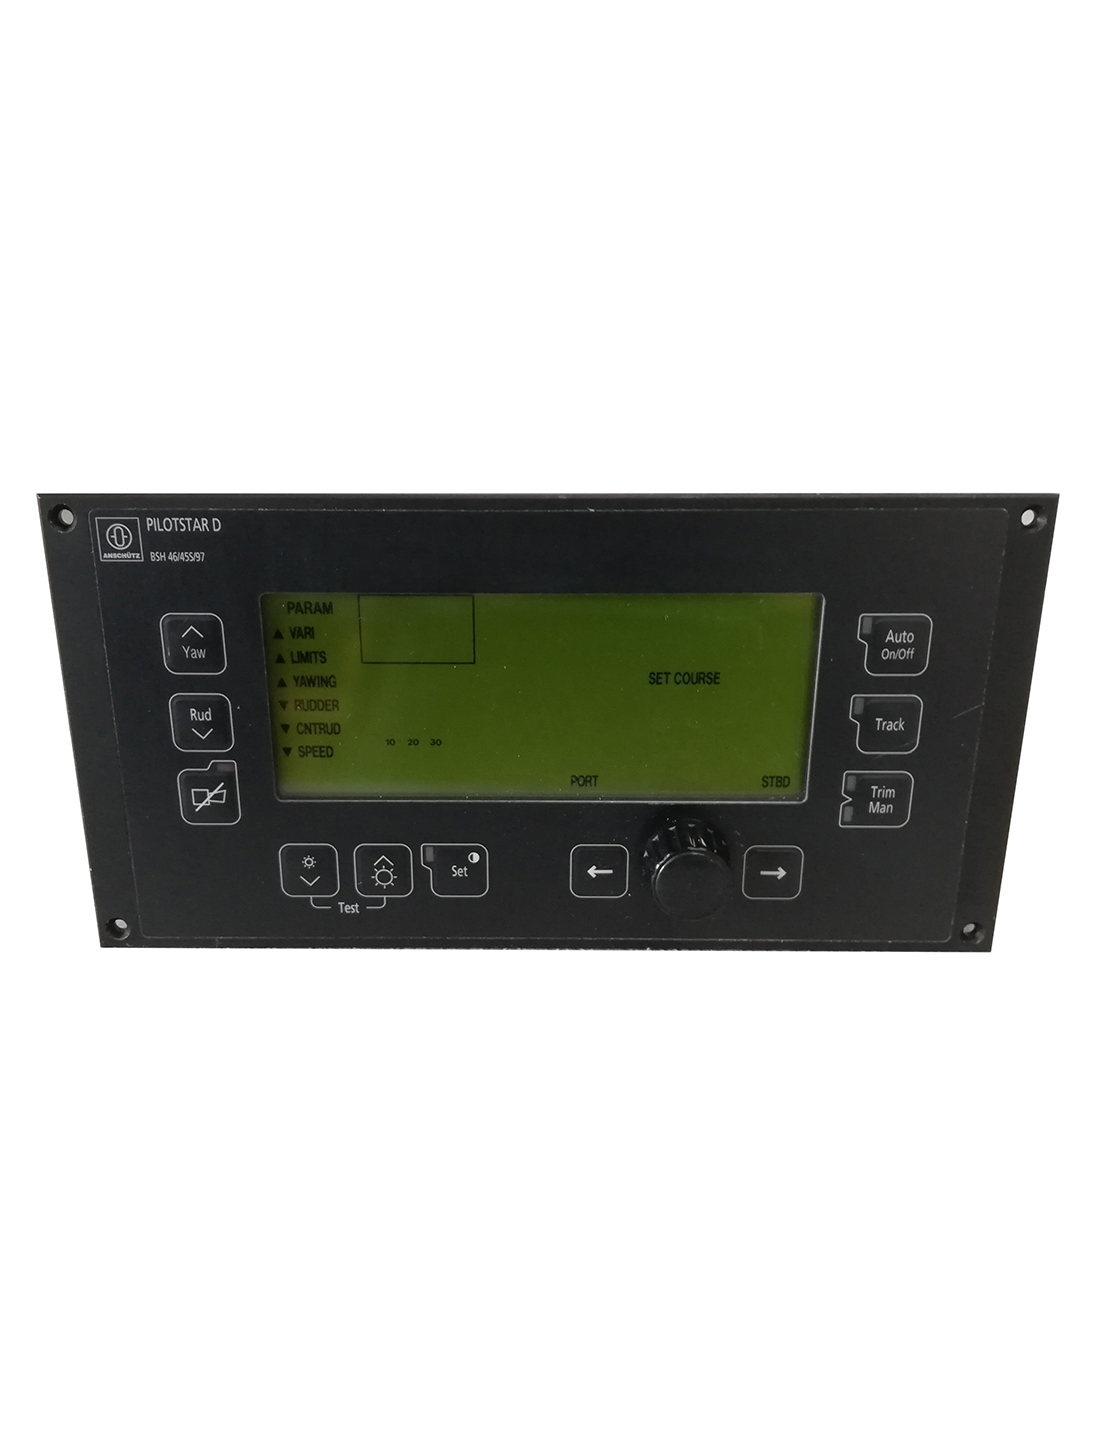 Controller system for autopilot PR-6000